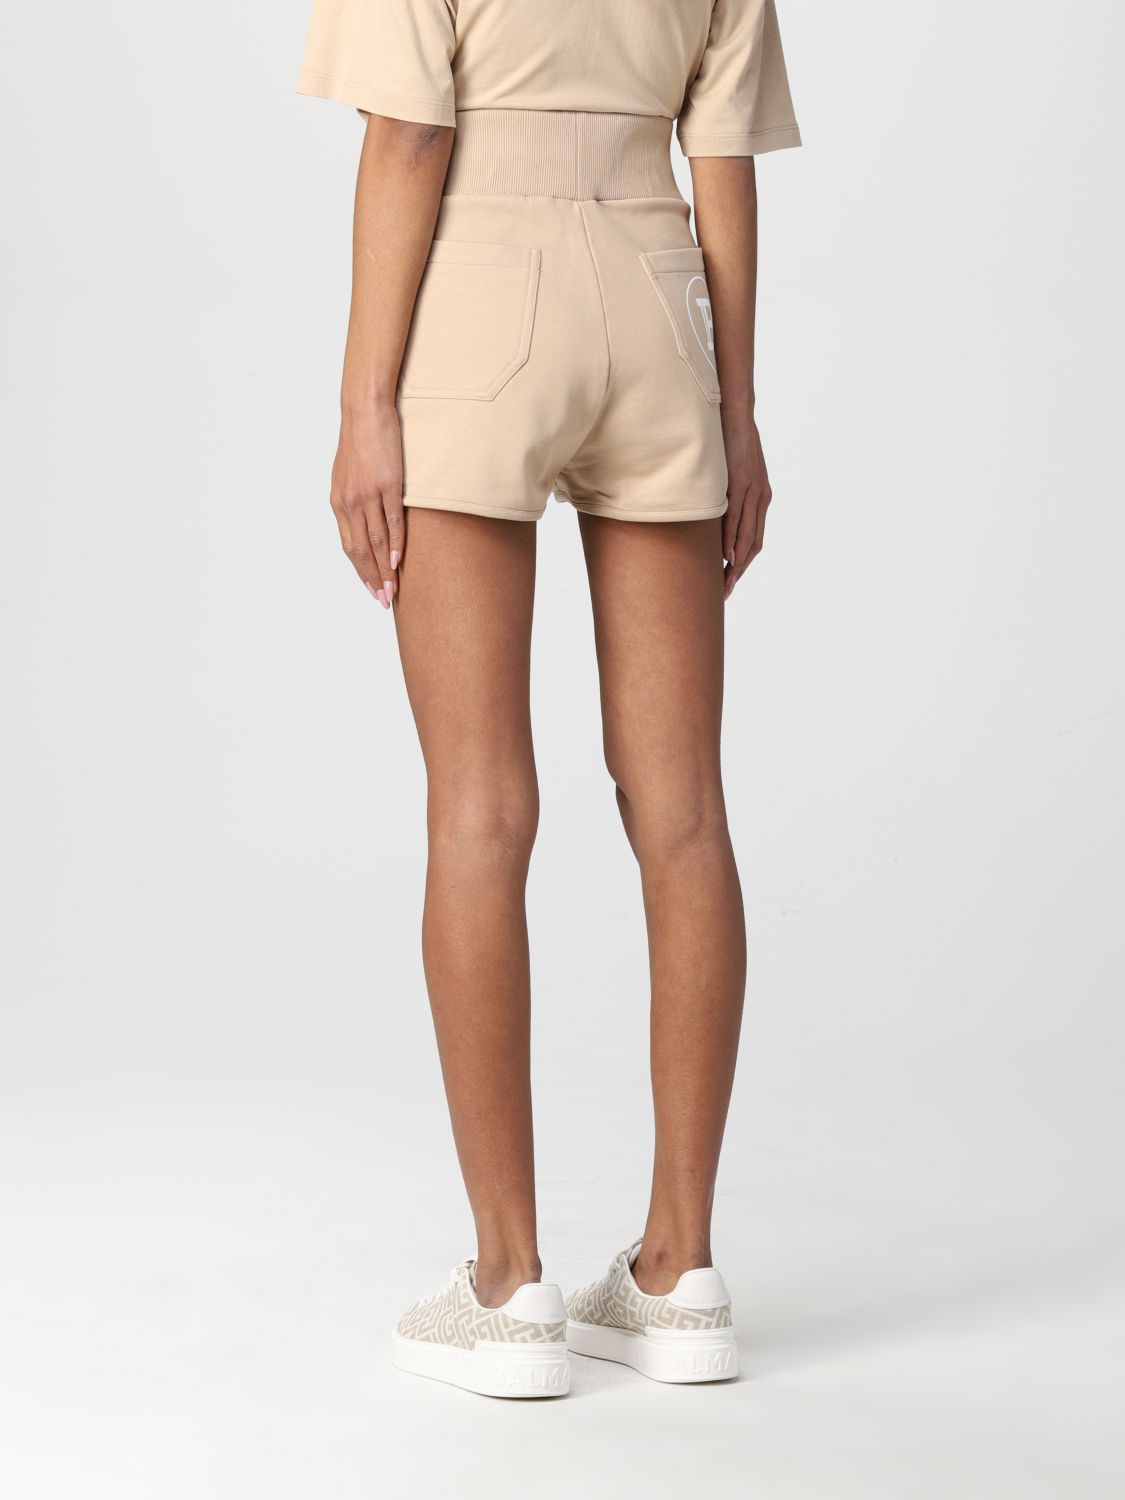 Womens Clothing Shorts Mini shorts Natural Balmain Cotton Shorts With Logo in Sand 